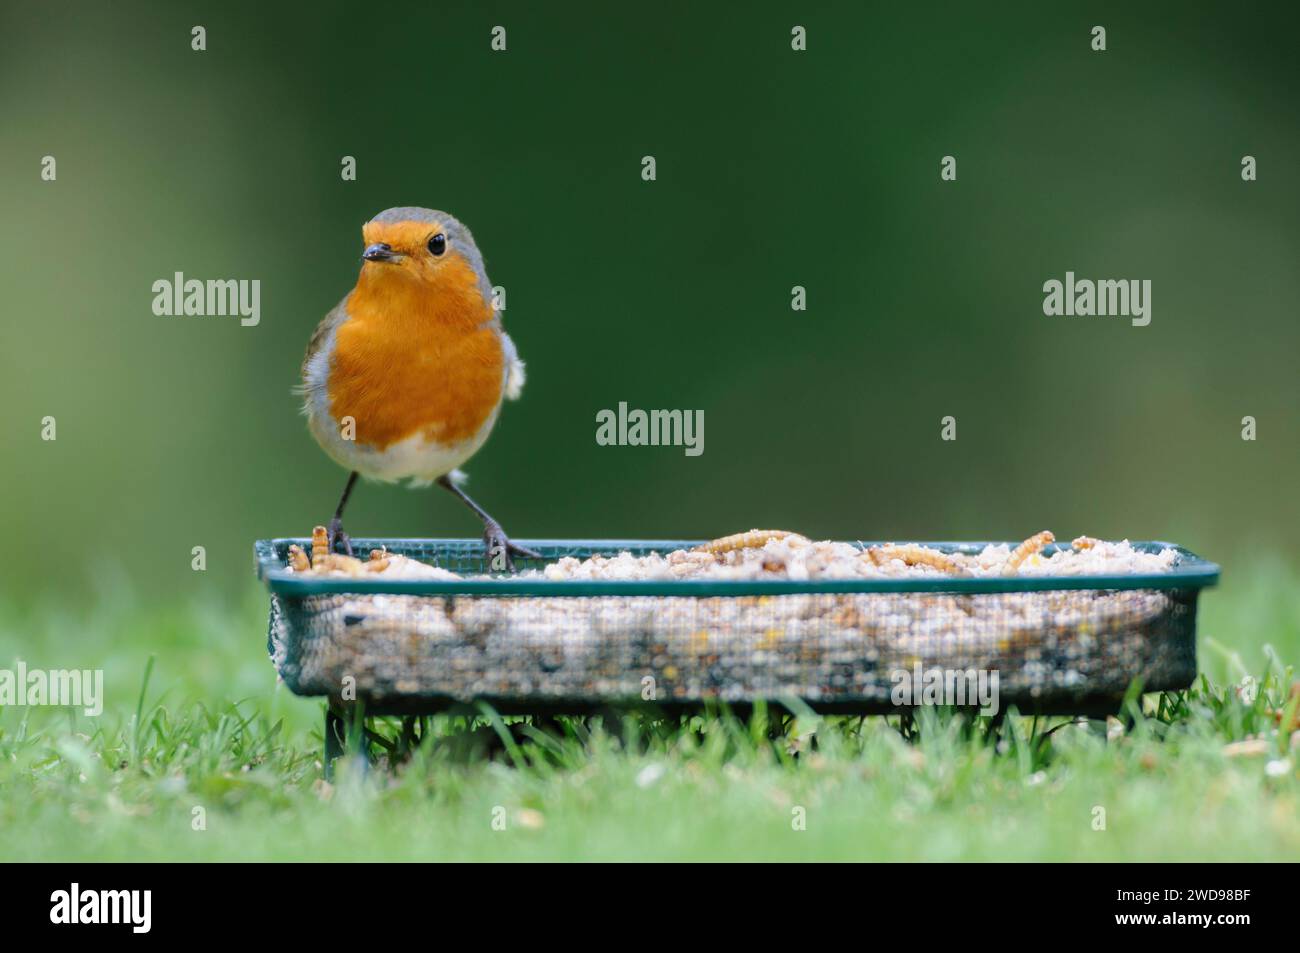 Robin européen erithacus rubecula, perché sur un plateau d'alimentation en treillis sur la pelouse du jardin, octobre. Banque D'Images